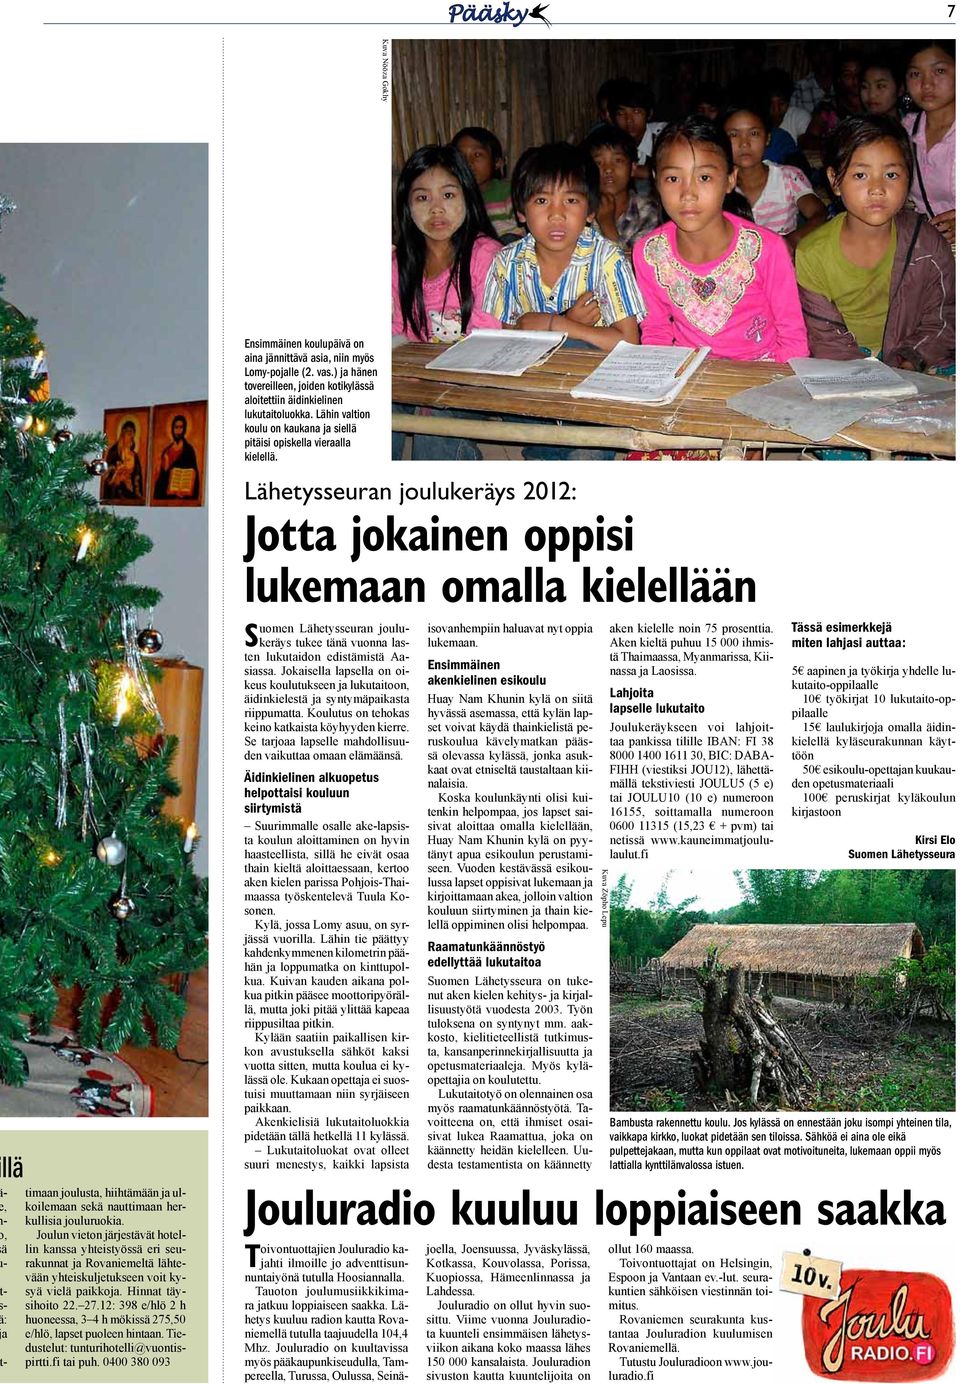 Lähetysseuran joulukeräys 2012: Jotta jokainen oppisi lukemaan omalla kielellään llä -, -, ä - - - : a - timaan joulusta, hiihtämään ja ulkoilemaan sekä nauttimaan herkullisia jouluruokia.